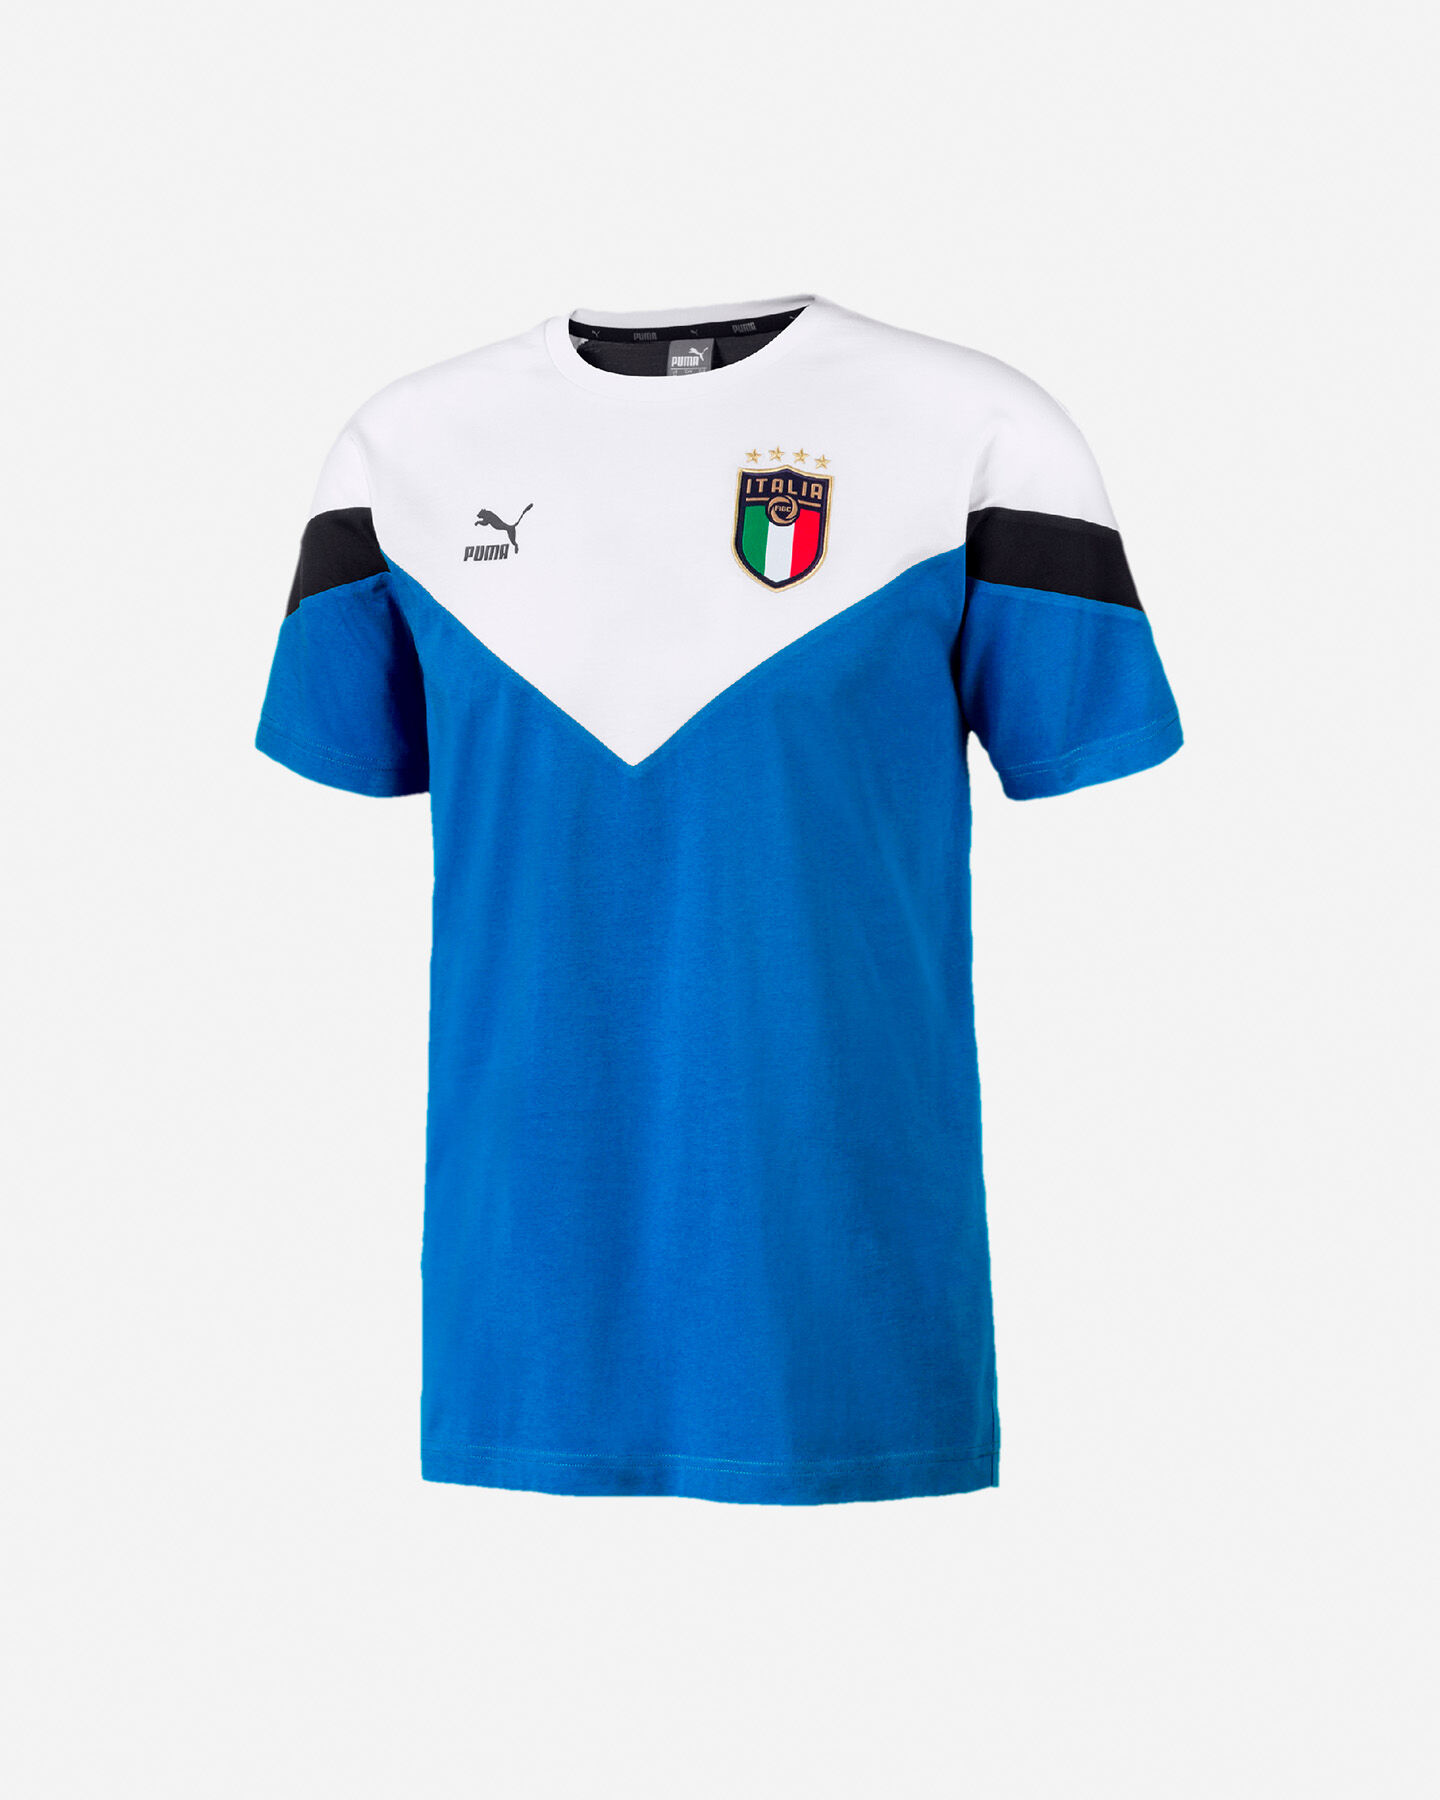  Abbigliamento calcio PUMA ITALIA ICON 20 M S5185557|16|S scatto 0